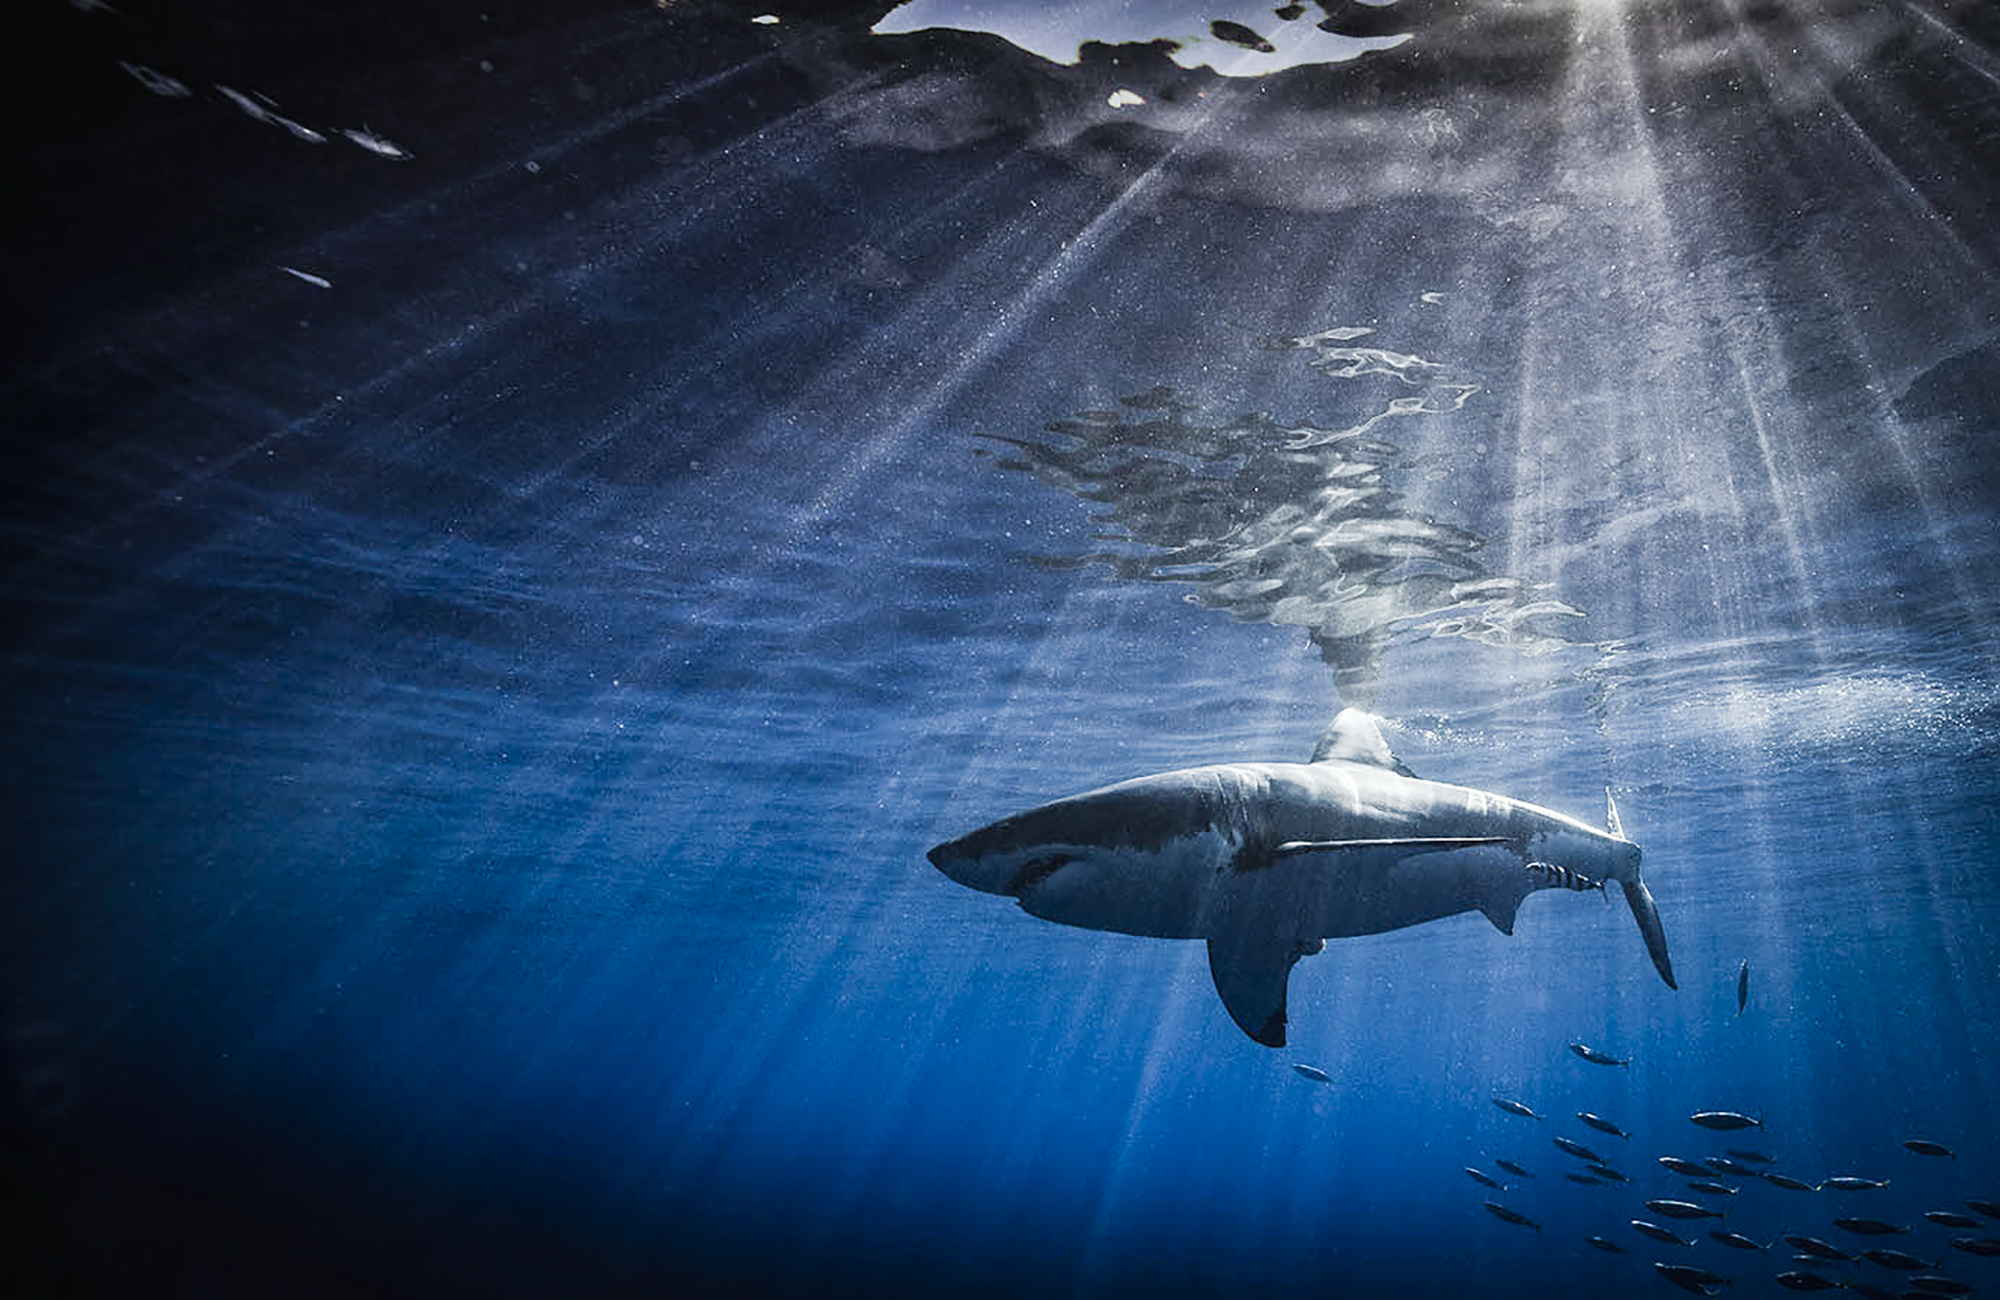 Shark in a sunbeam, Photo by Scott Davis